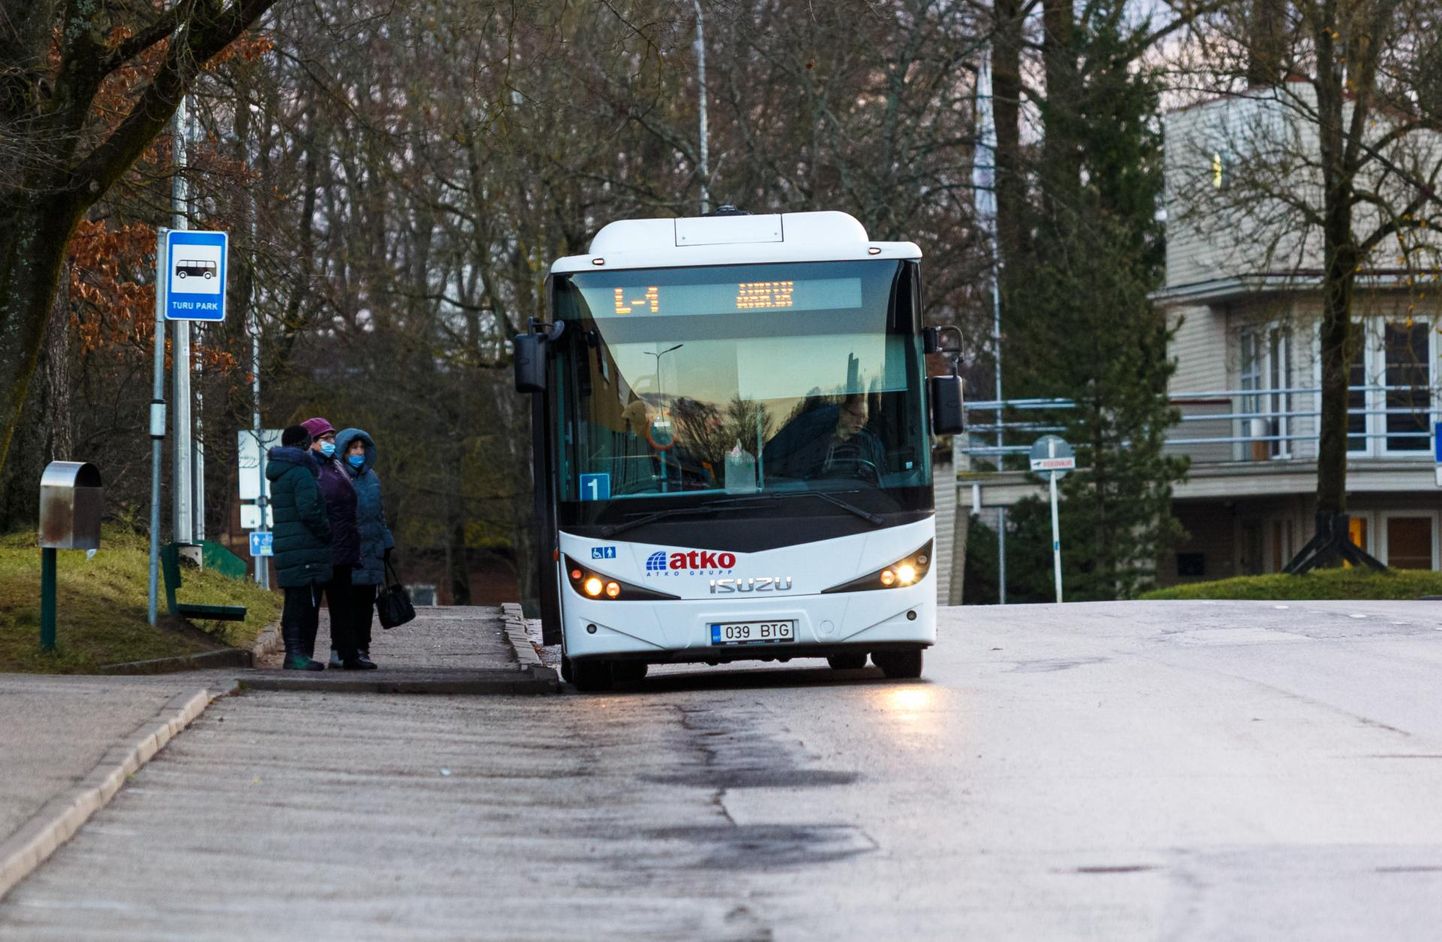 Praegu on Valga linnas kaks bussiliini. Lootuse kohaselt võiks samasugune buss hakata liiklema ka Valga ja Valka vahel.